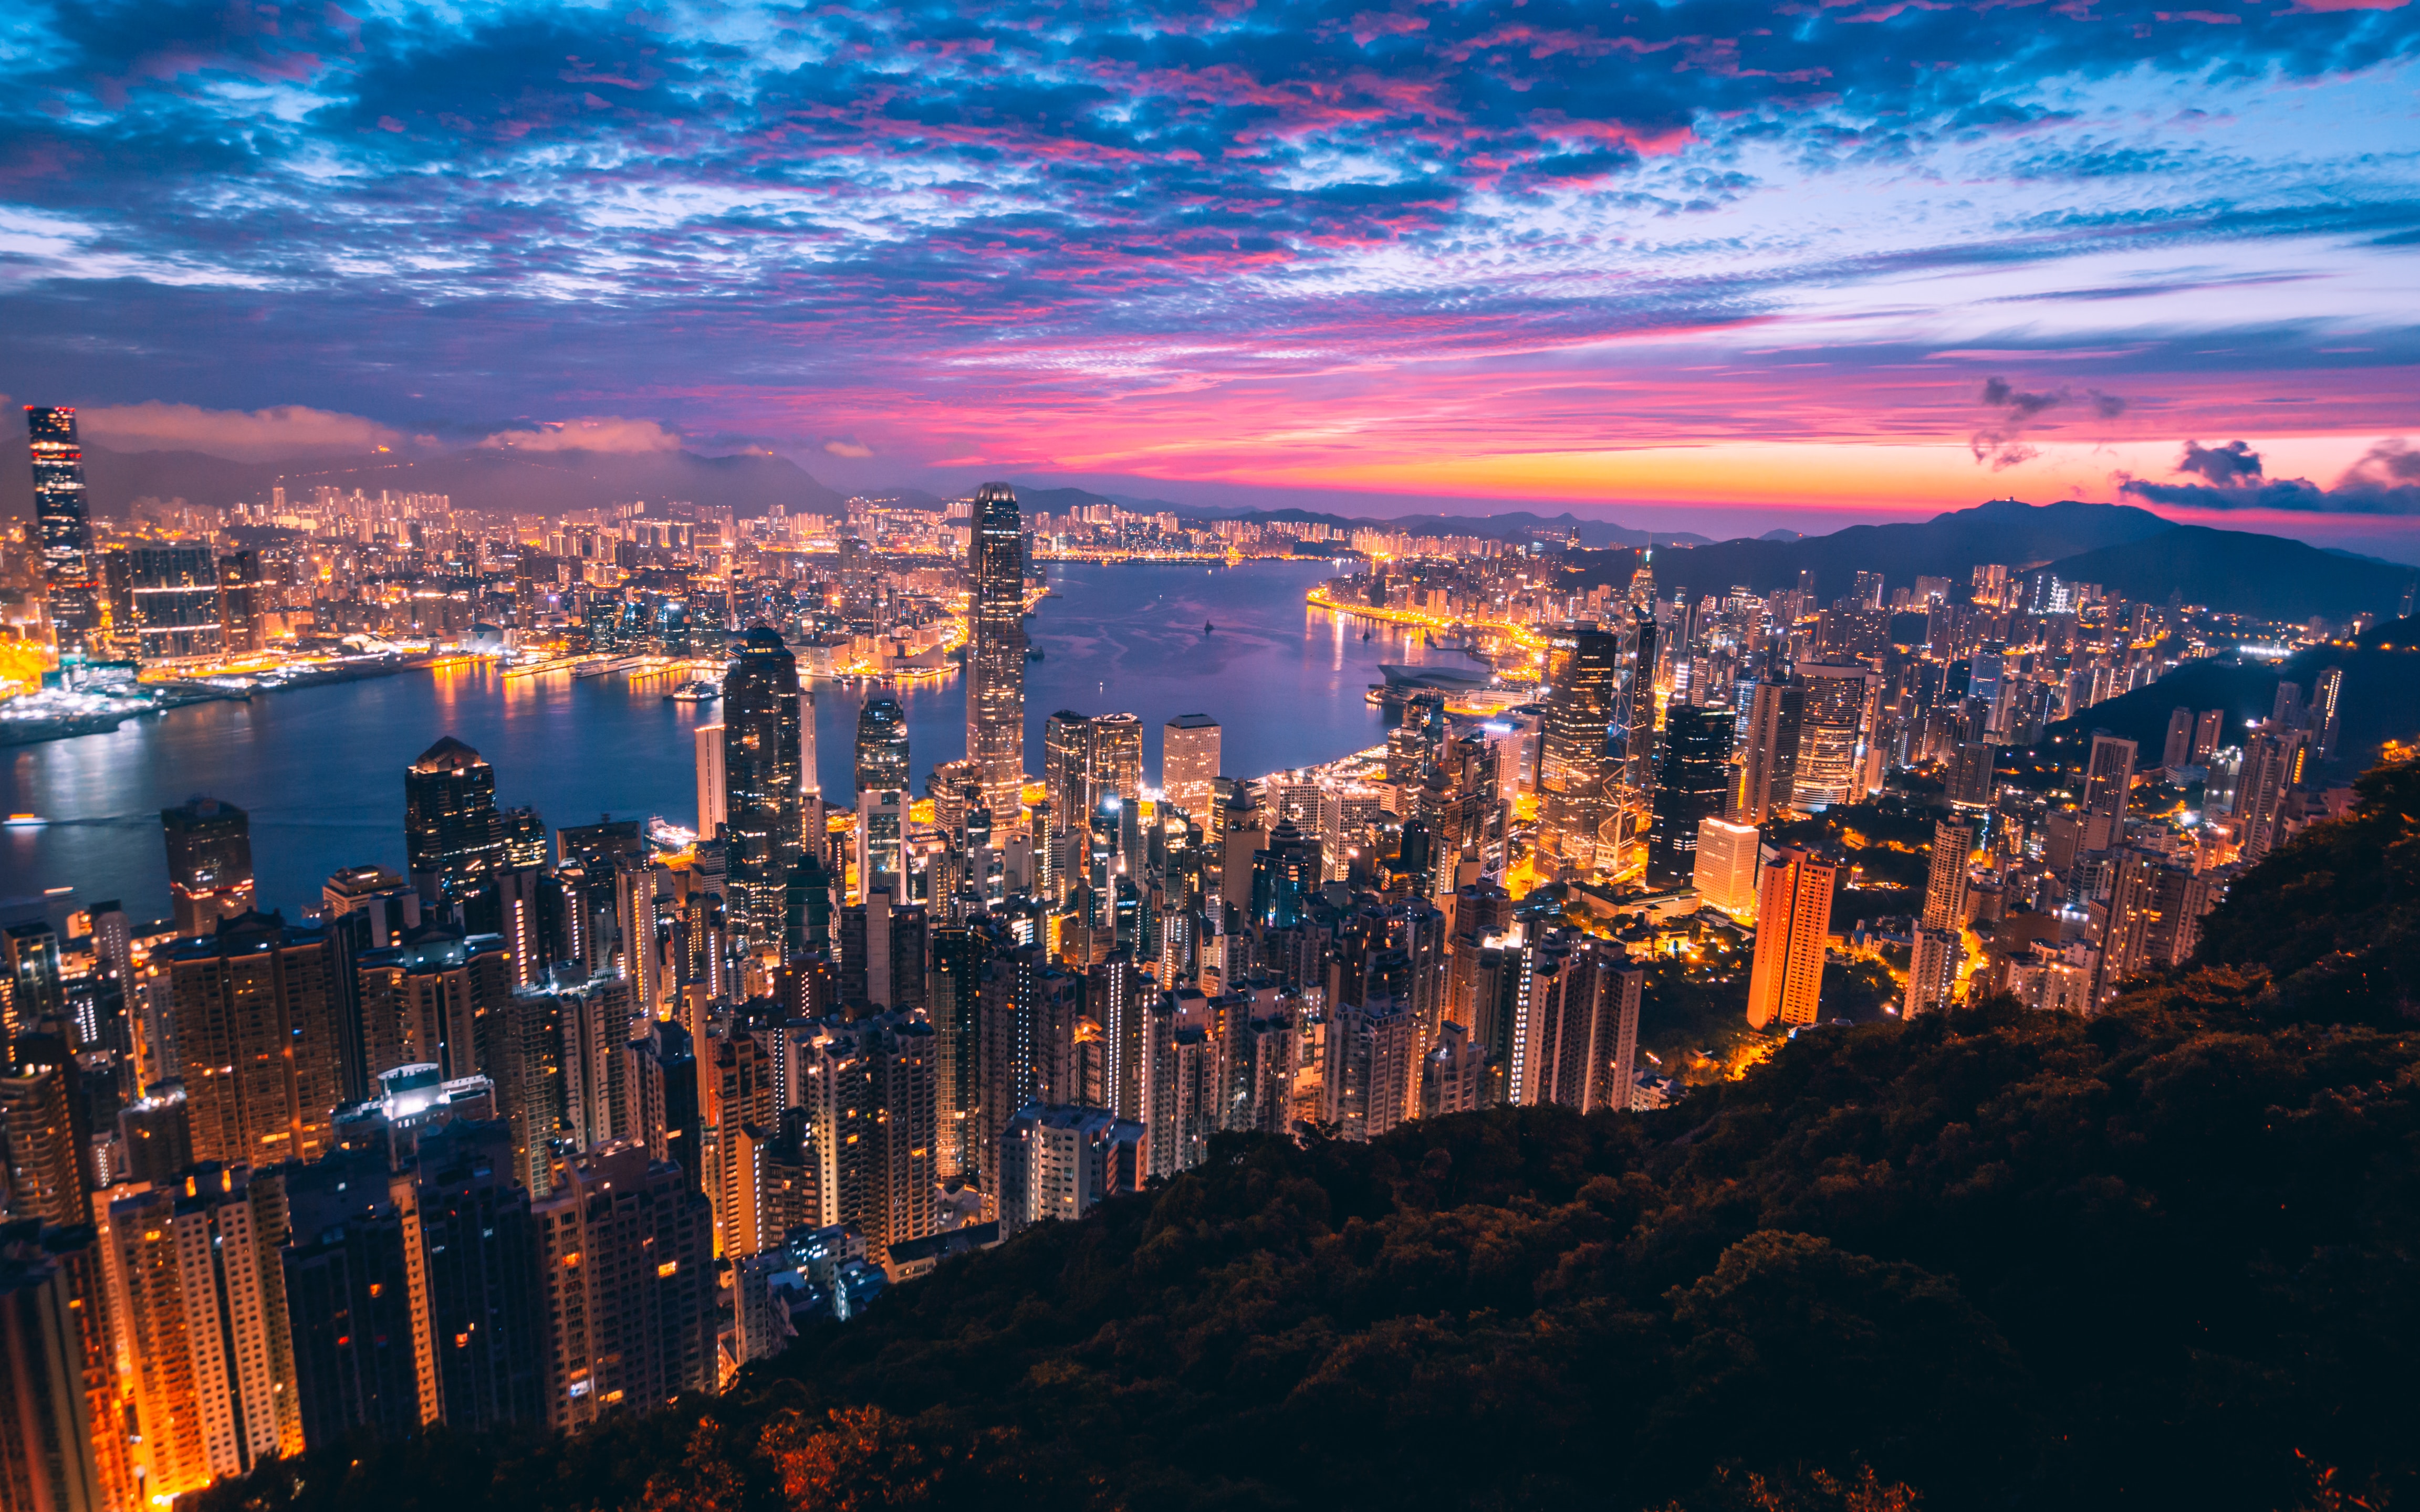 Hong Kong, Photo by Simon Zhu on Unsplash